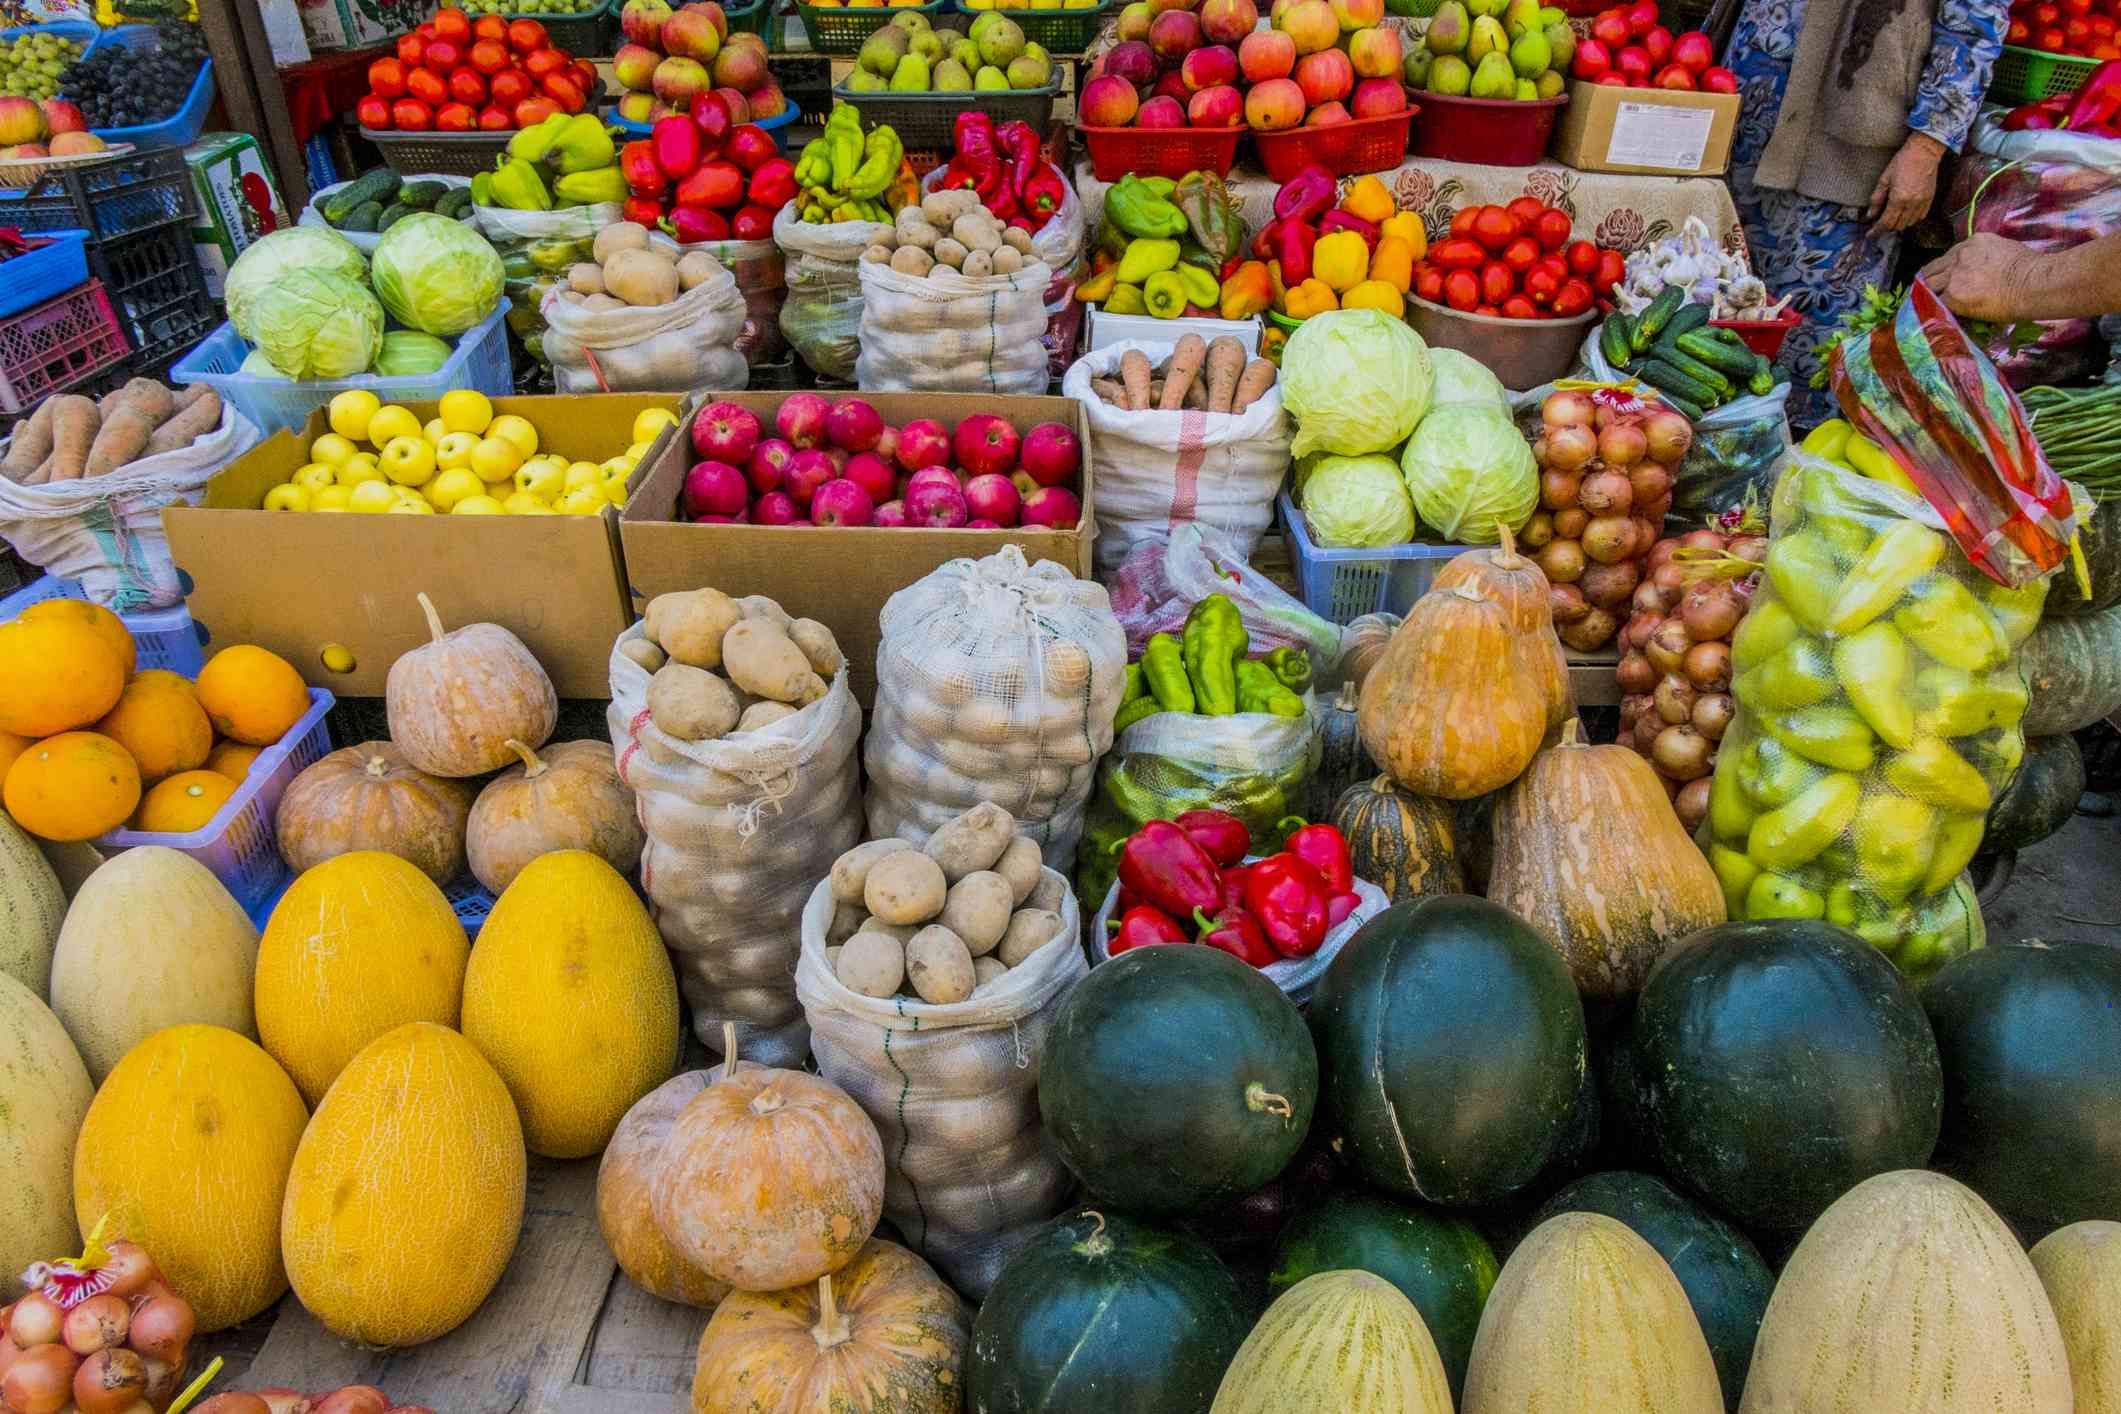 Variedad de frutas y verduras de colores, como melones, calabazas, tomates, patatas y manzanas, sobre mesas, en cajas y en bolsas en un mercado agrícola